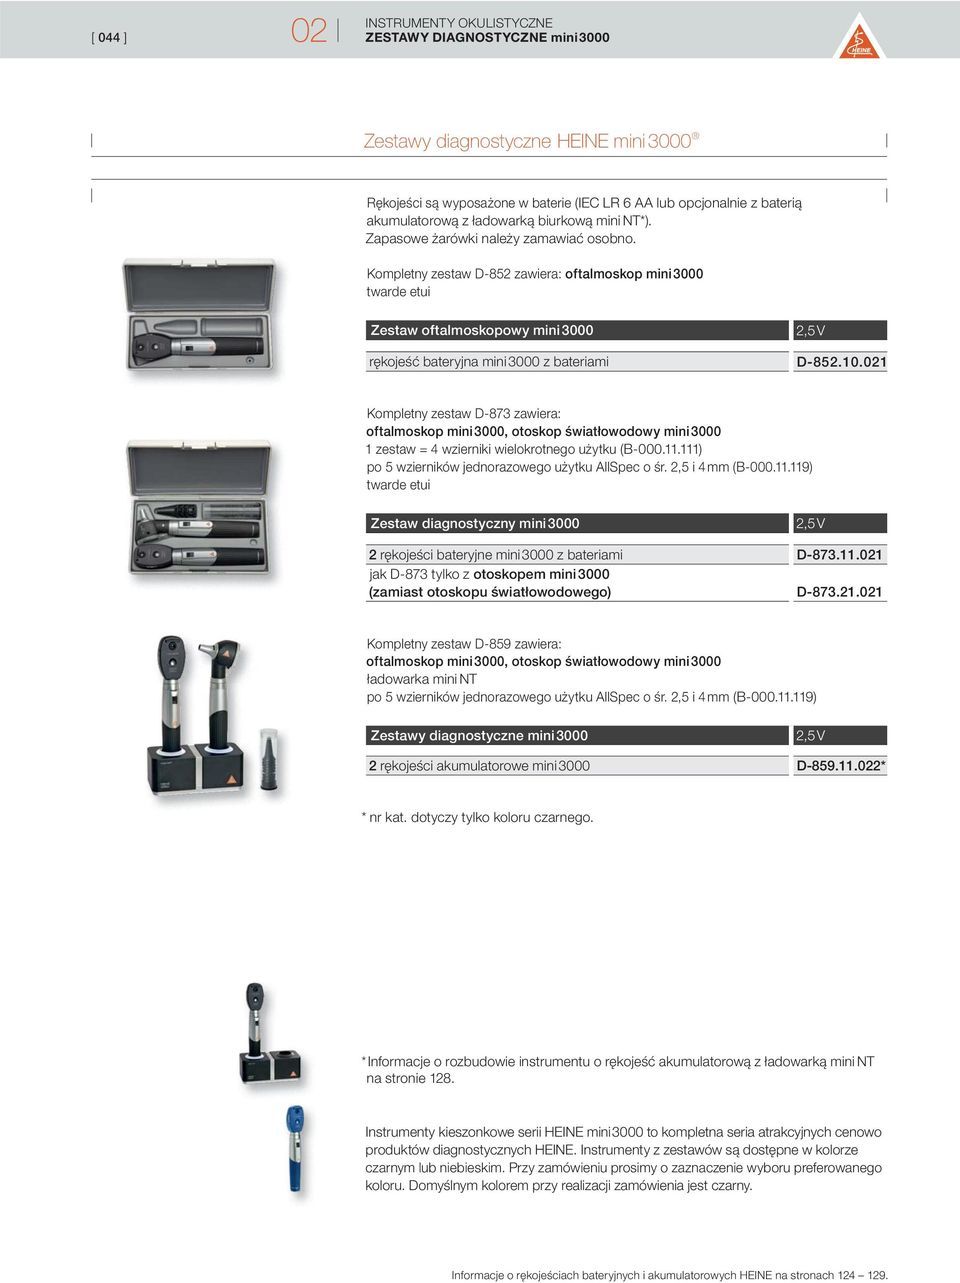 021 Kompletny zestaw D-873 zawiera: oftalmoskop mini 3000, otoskop światłowodowy mini 3000 1 zestaw = 4 wzierniki wielokrotnego użytku (B-000.11.111) po 5 wzierników jednorazowego użytku AllSpec o śr.